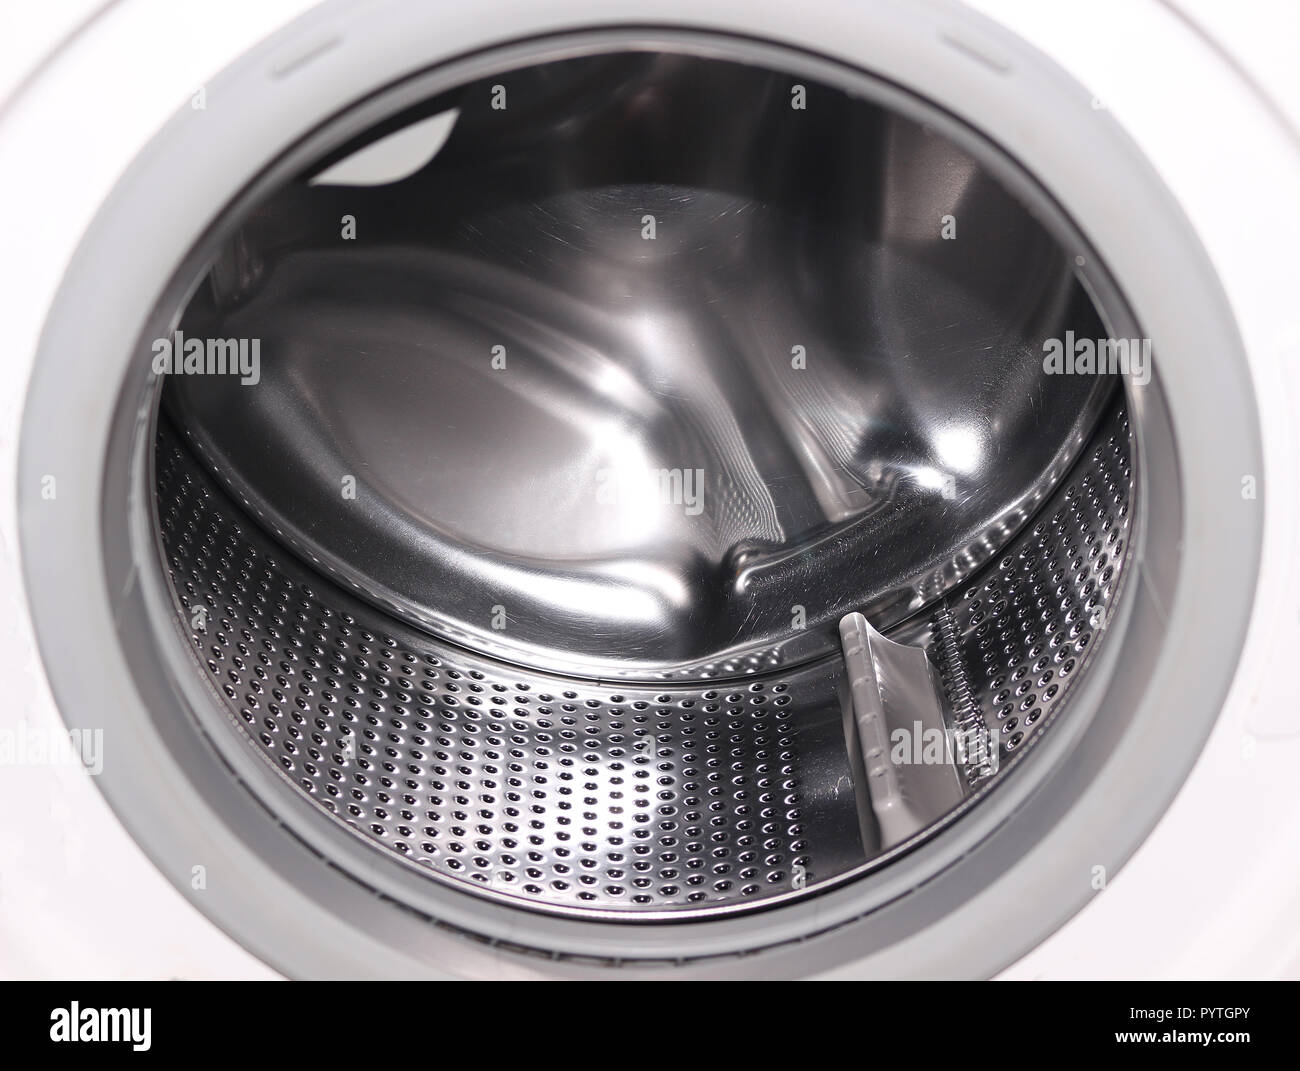 Cestello lavatrice immagini e fotografie stock ad alta risoluzione - Alamy